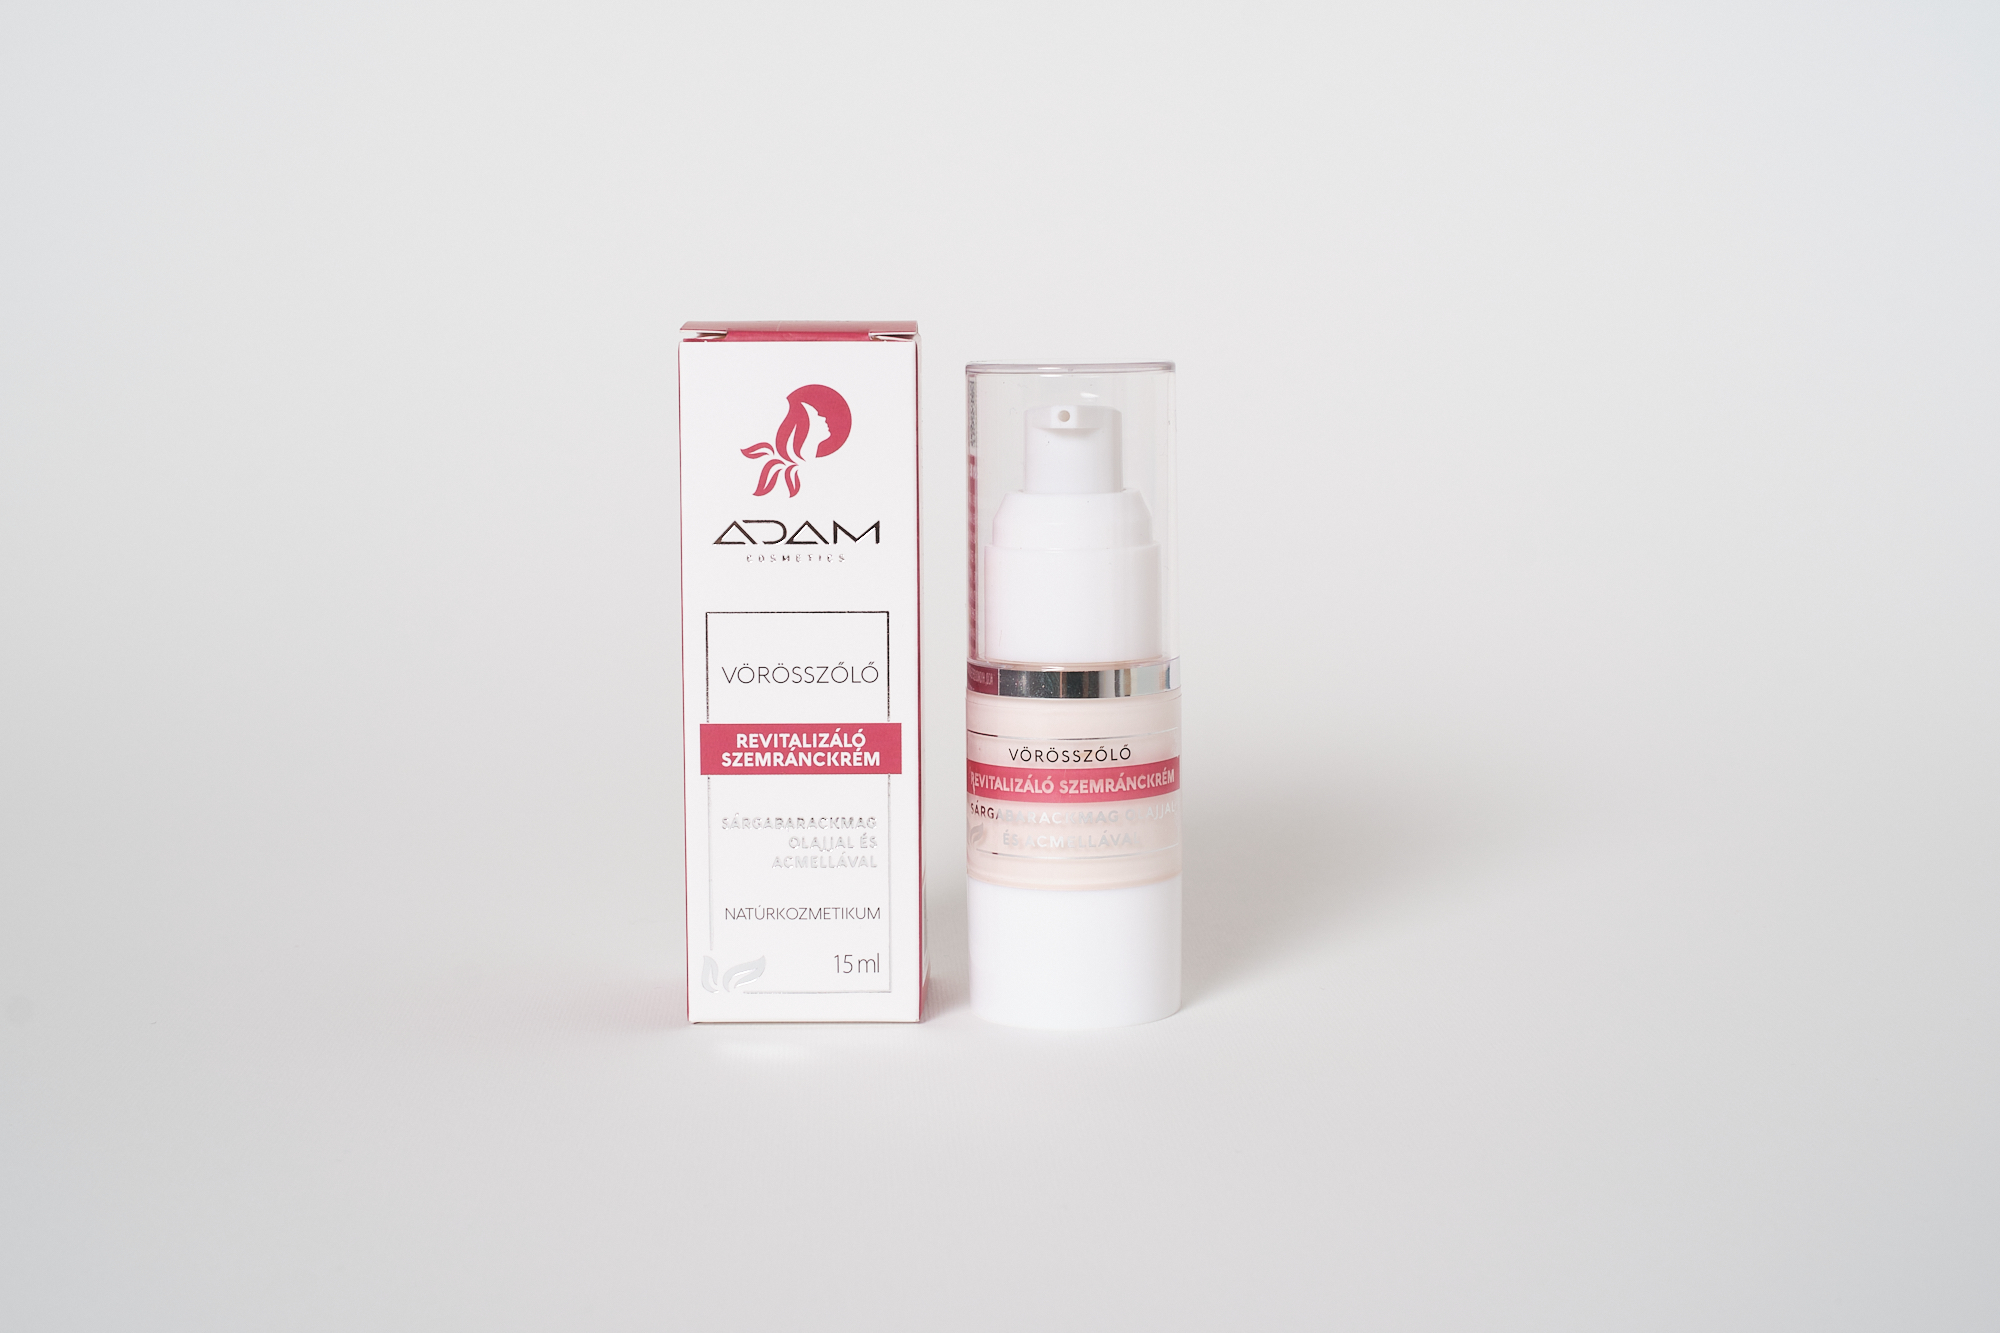 ADAM Cosmetics vörösszőlő revitalizáló szemránckrém sárgabarackmag olajjal és acmellával